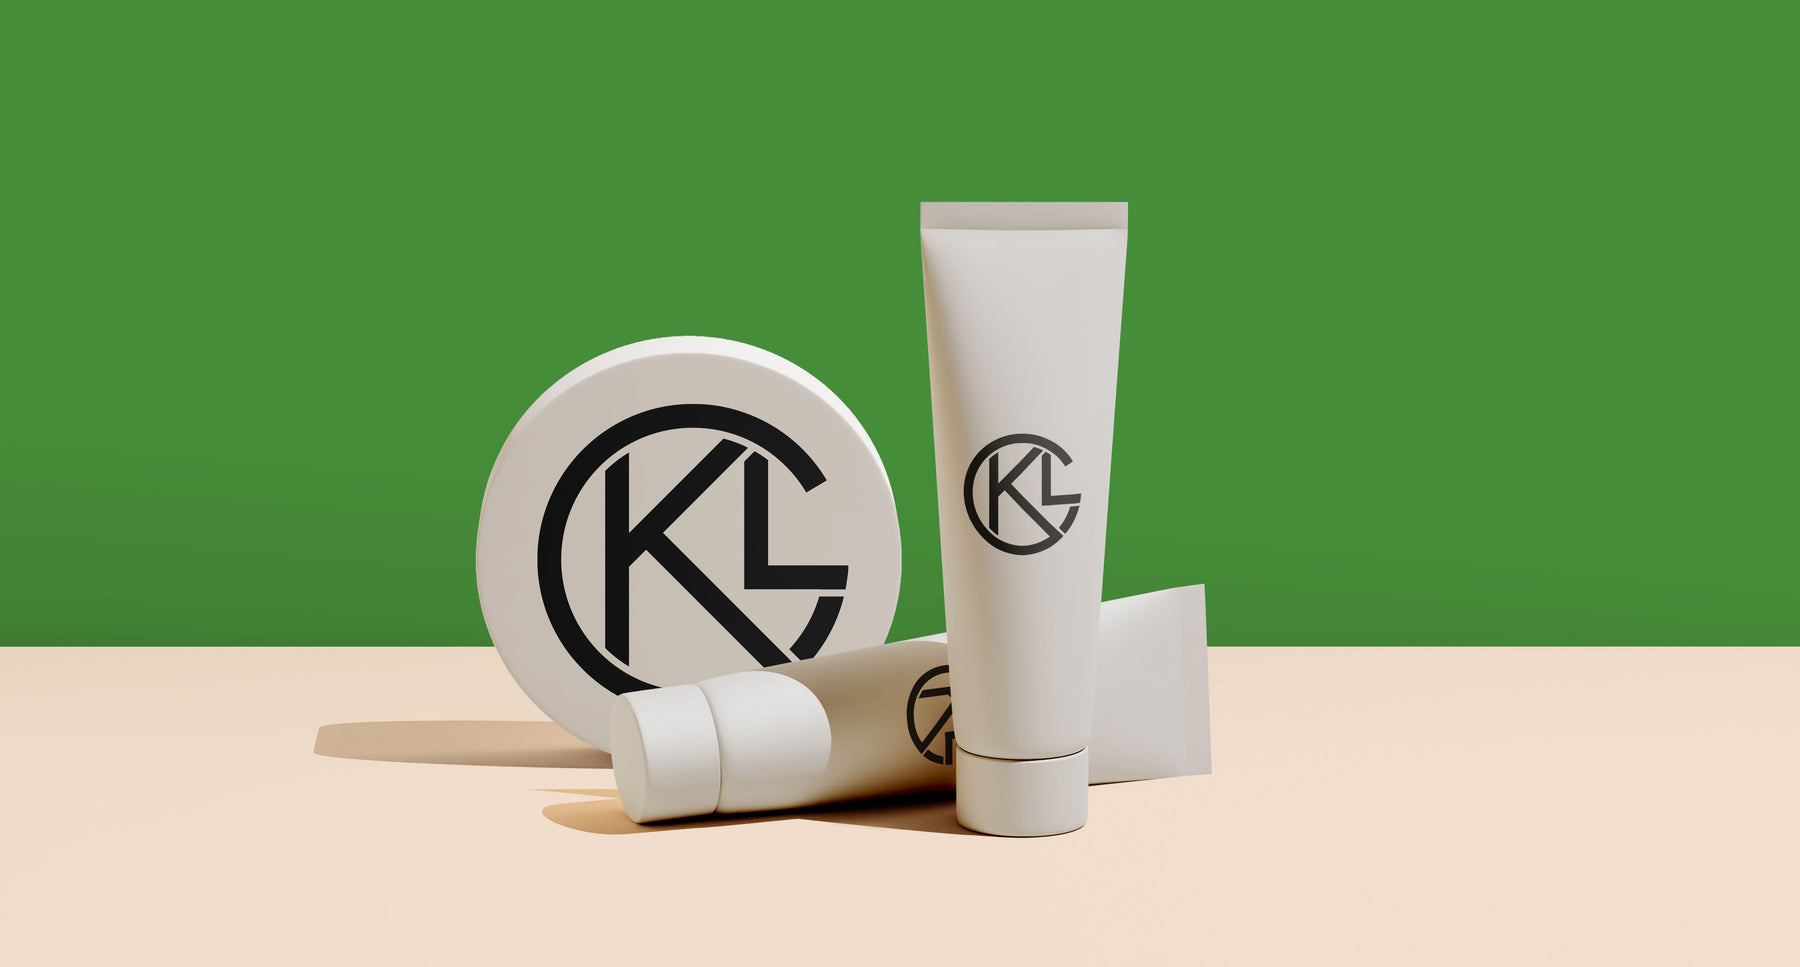 Klotz Grassinger packaging against green background